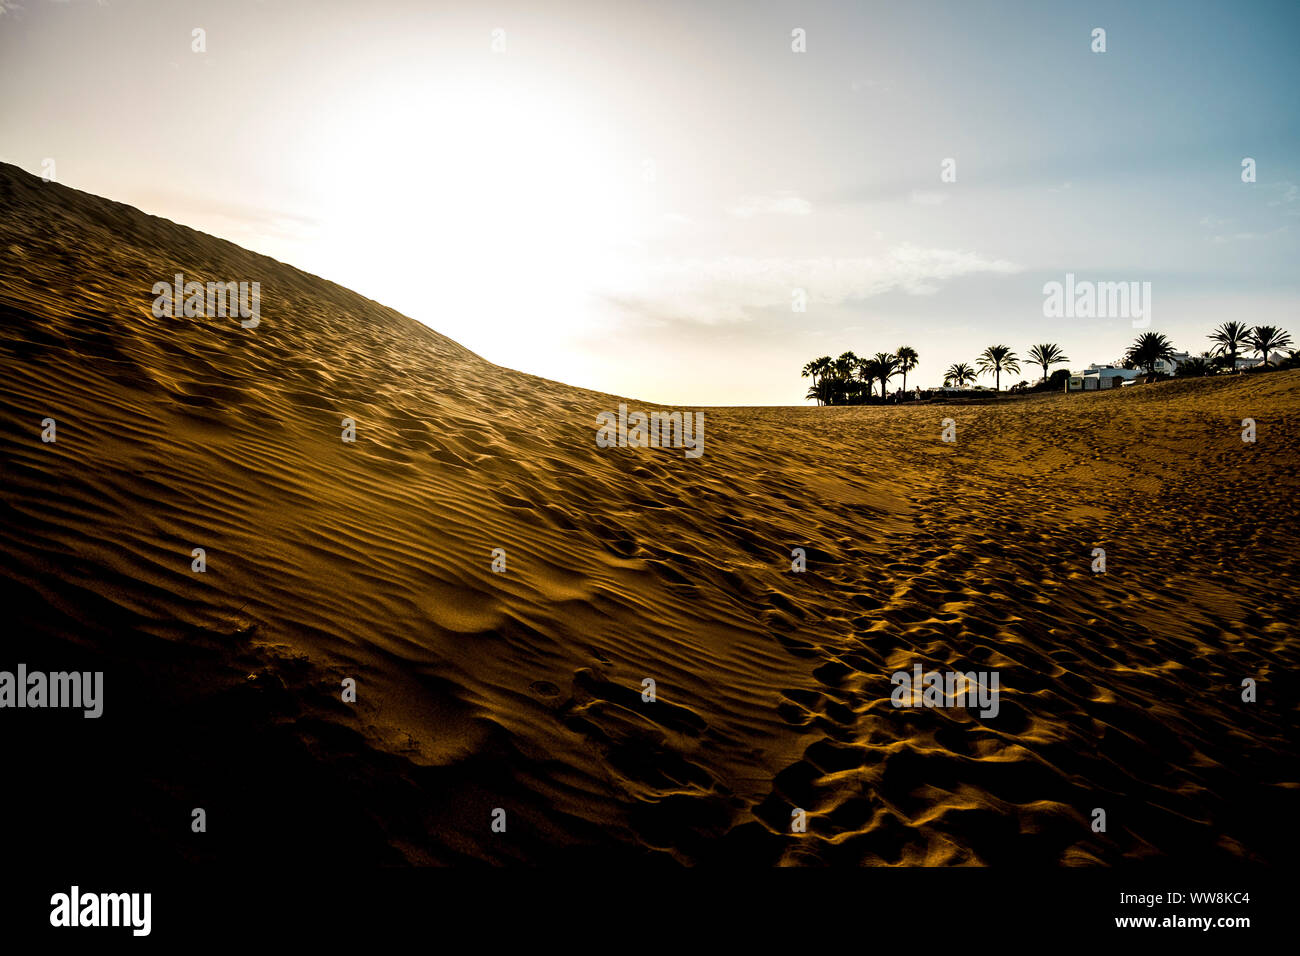 Deset und Dünen Landschaft während einer schönen goldenen Sonnenuntergang. tropischen Palmen und Häuser im Hintergrund. Footprint von Menschen und Wellen auf den Sand. Warme Farben auf dem Boden und blauer Himmel. outdoor Schönheit Stockfoto